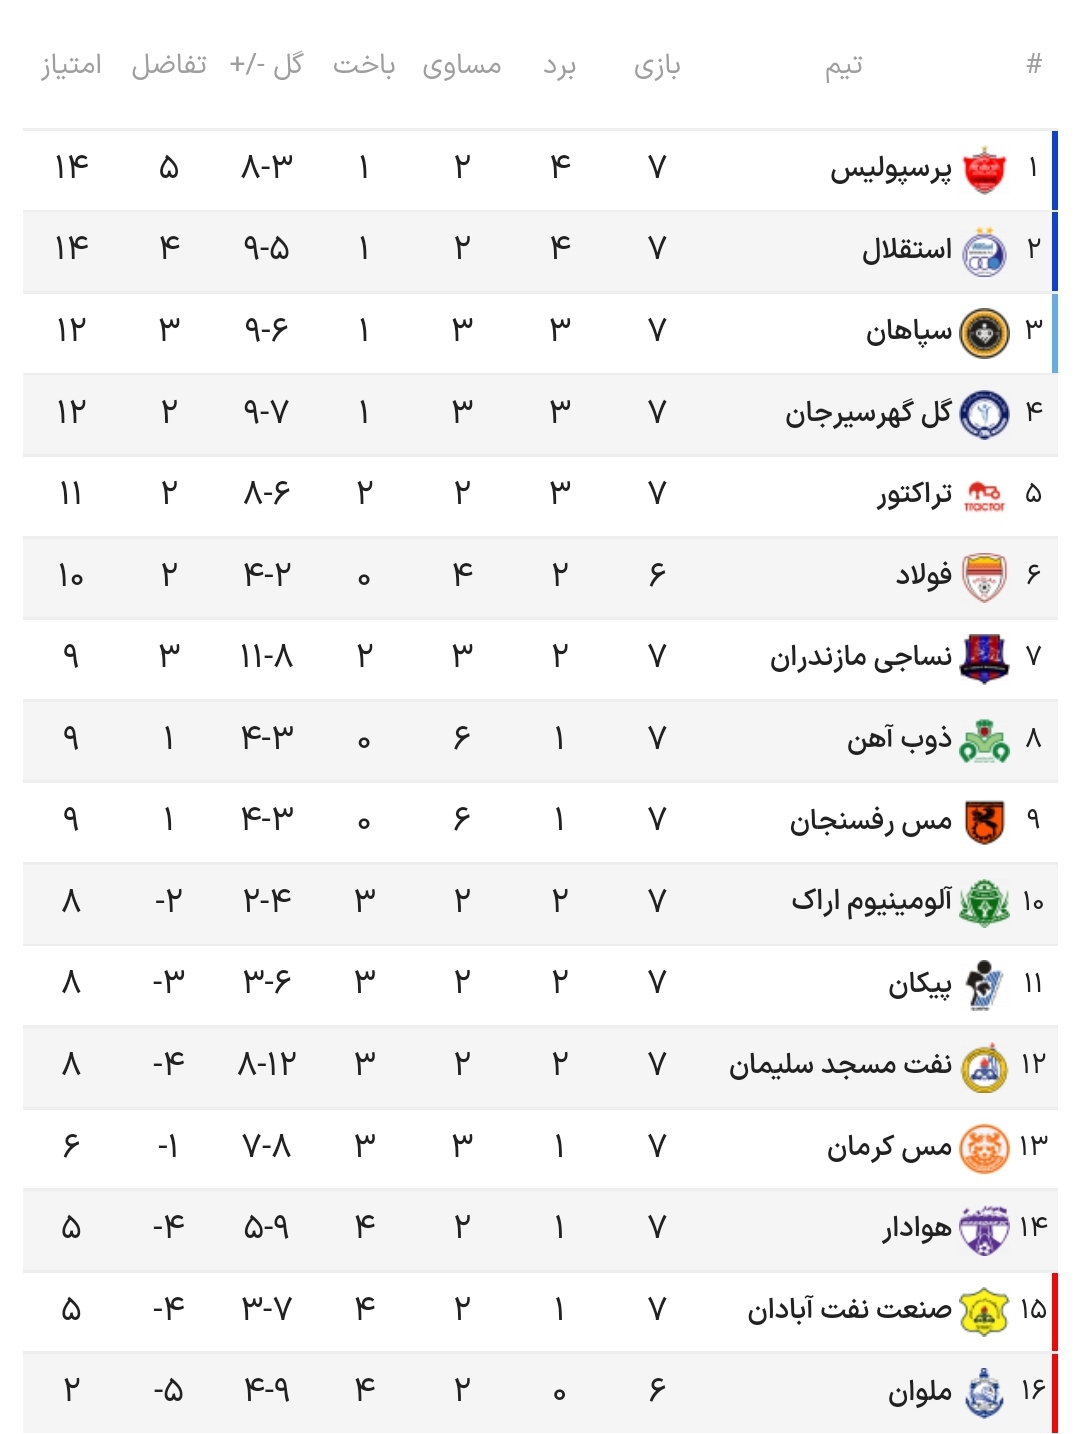 جدول رده بندی لیگ برتر در پایان هفته هفتم